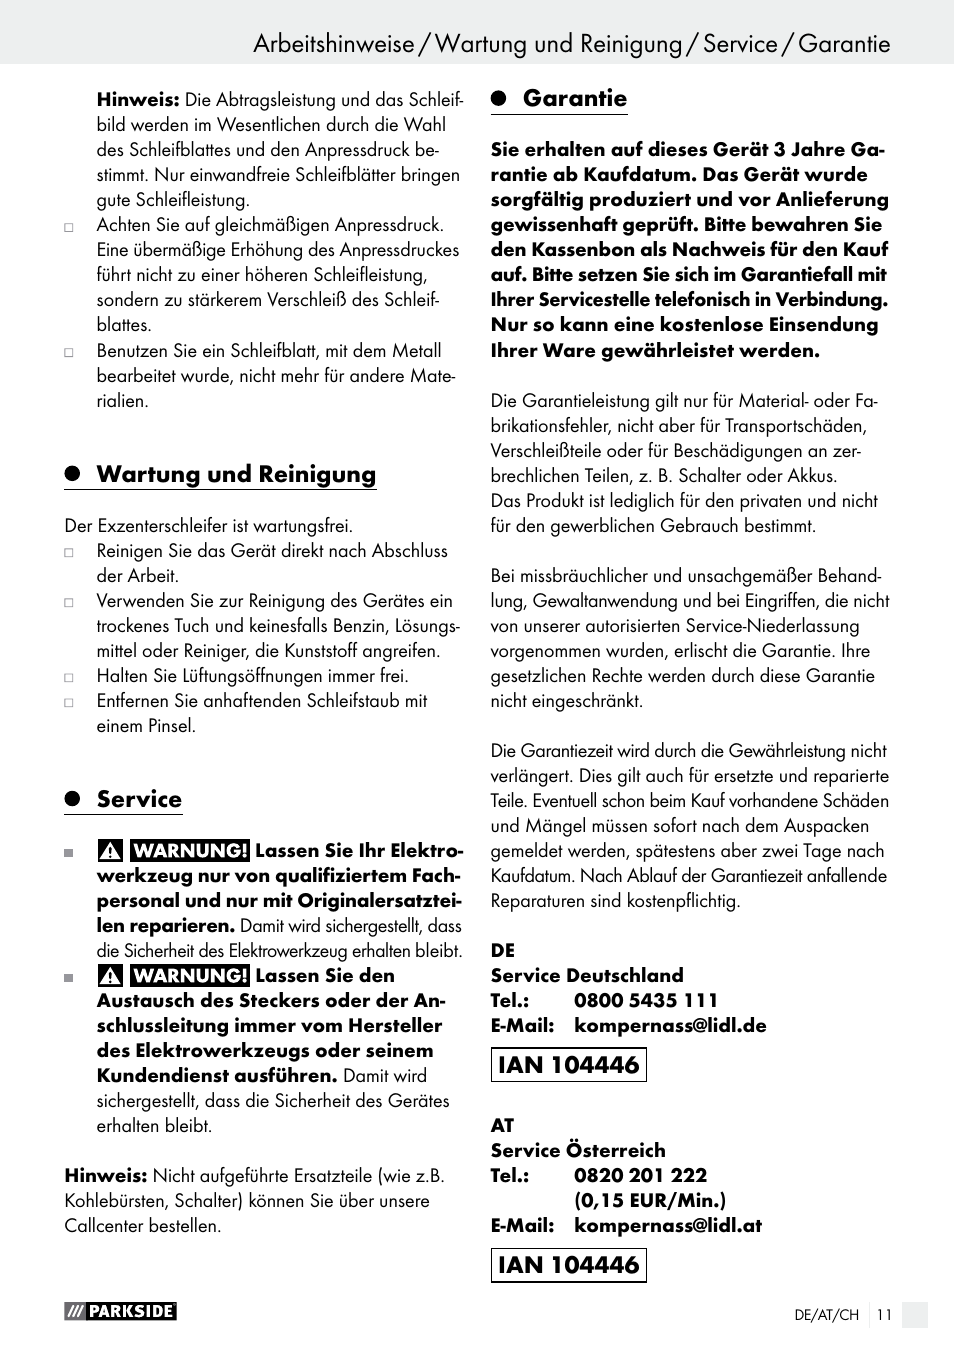 Wartung und reinigung, Service, Garantie | Parkside PEXS 270 A1 User Manual  | Page 11 / 37 | Original mode